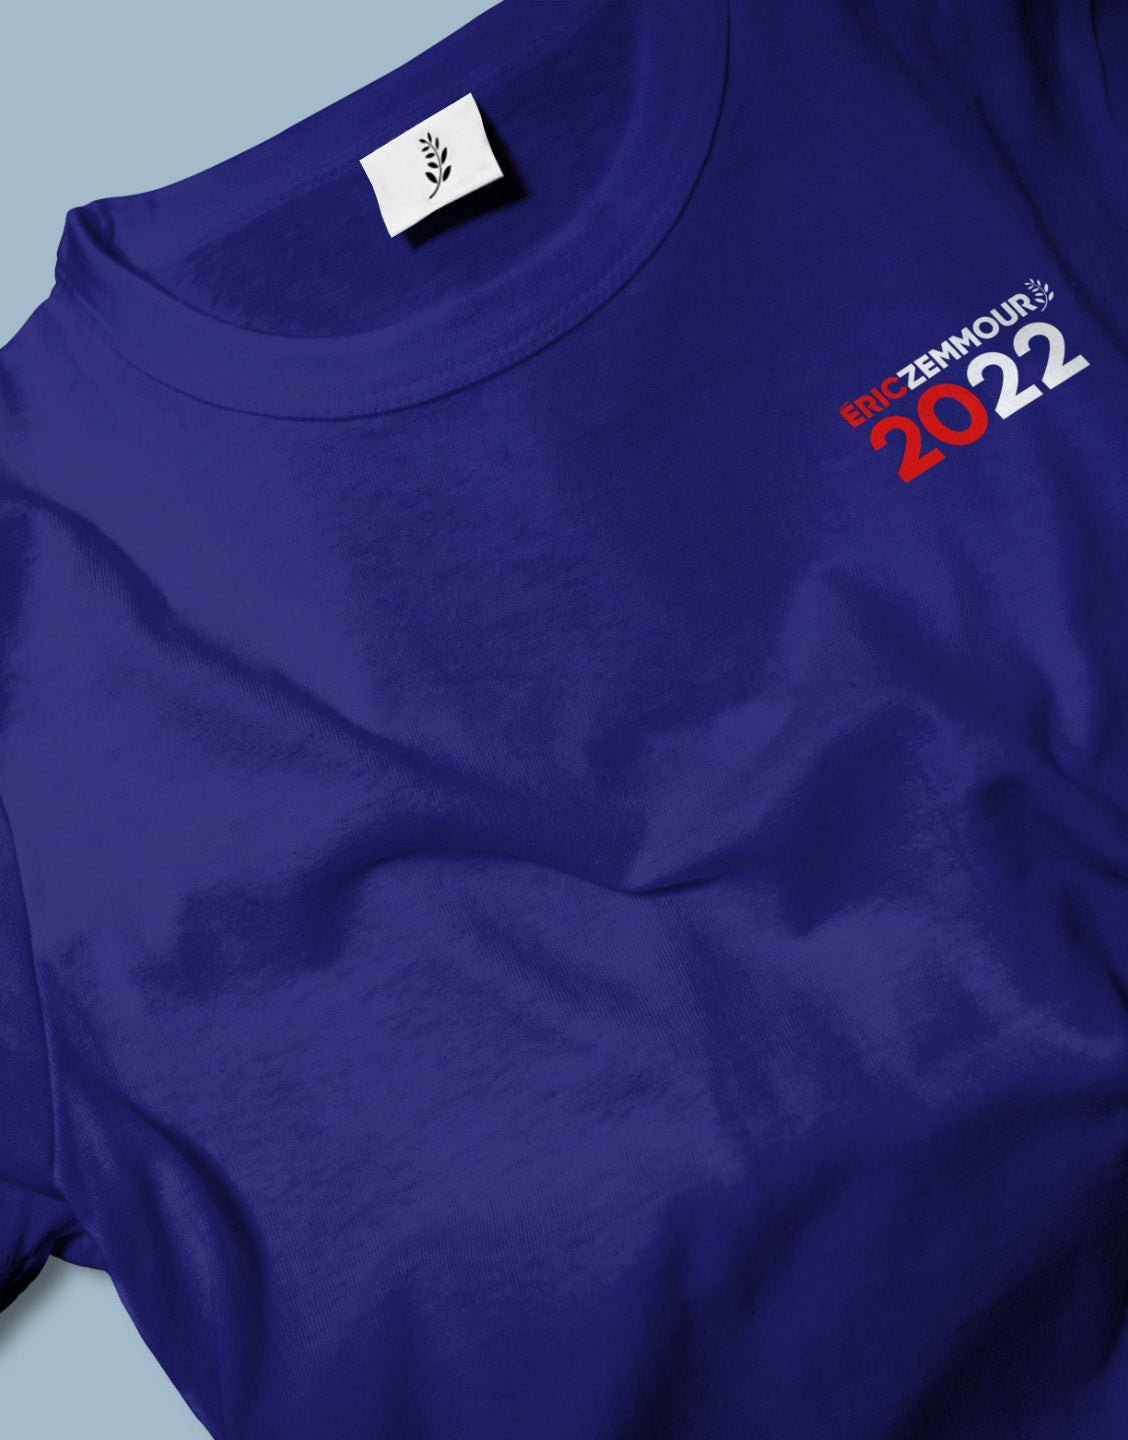 T-shirt bleu Éric Zemmour 2022